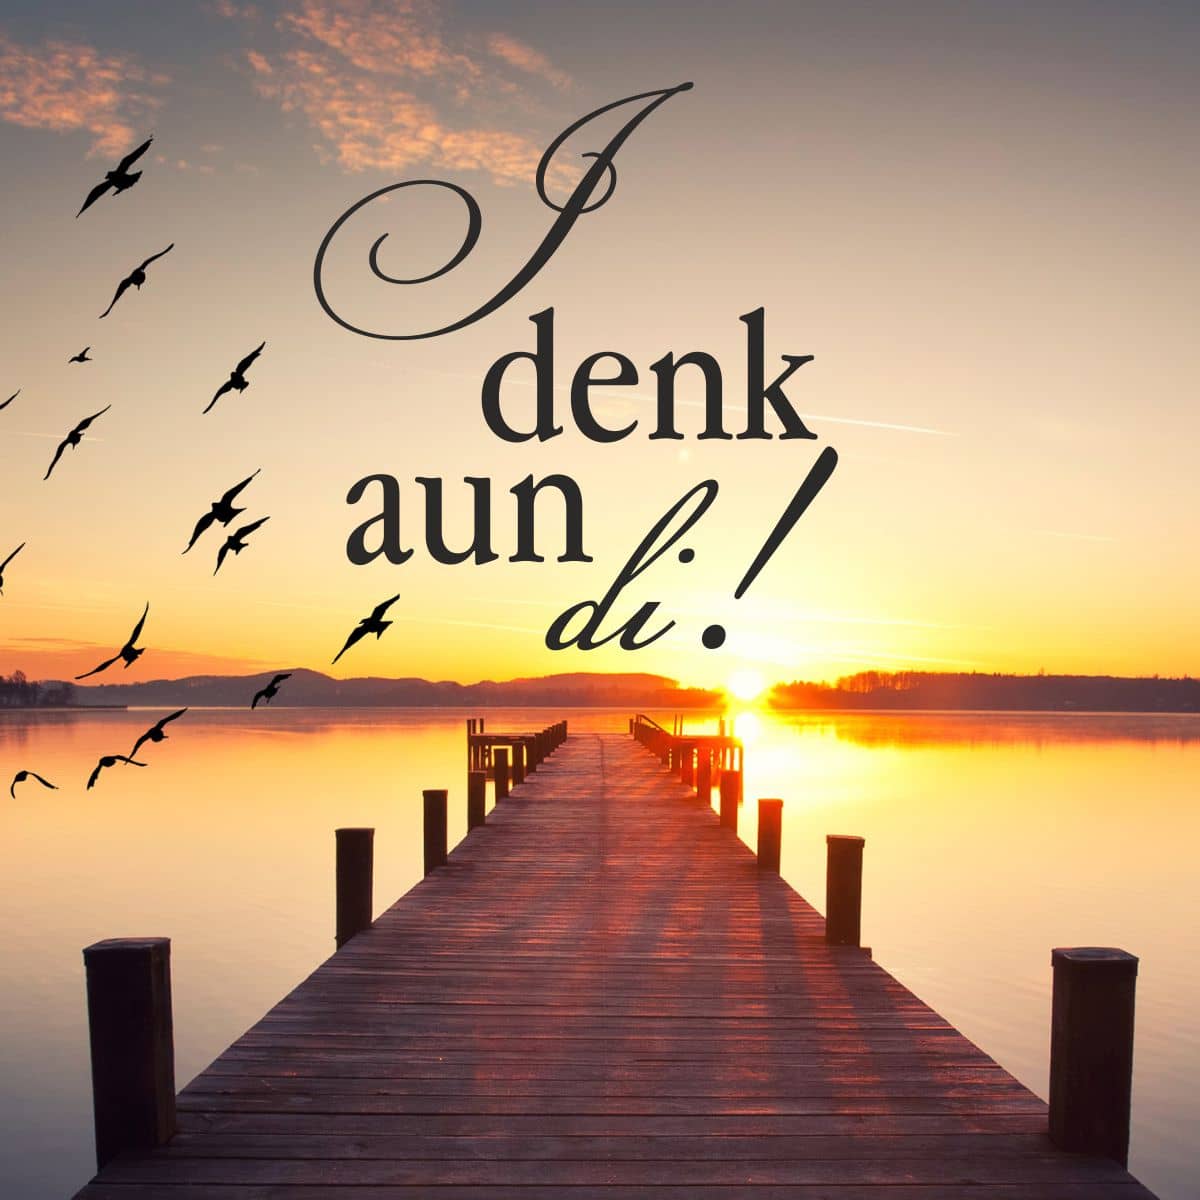 Motiv Steg auf See mit Sonnenuntergang und Vögeln mit Text "I denk aun di!"